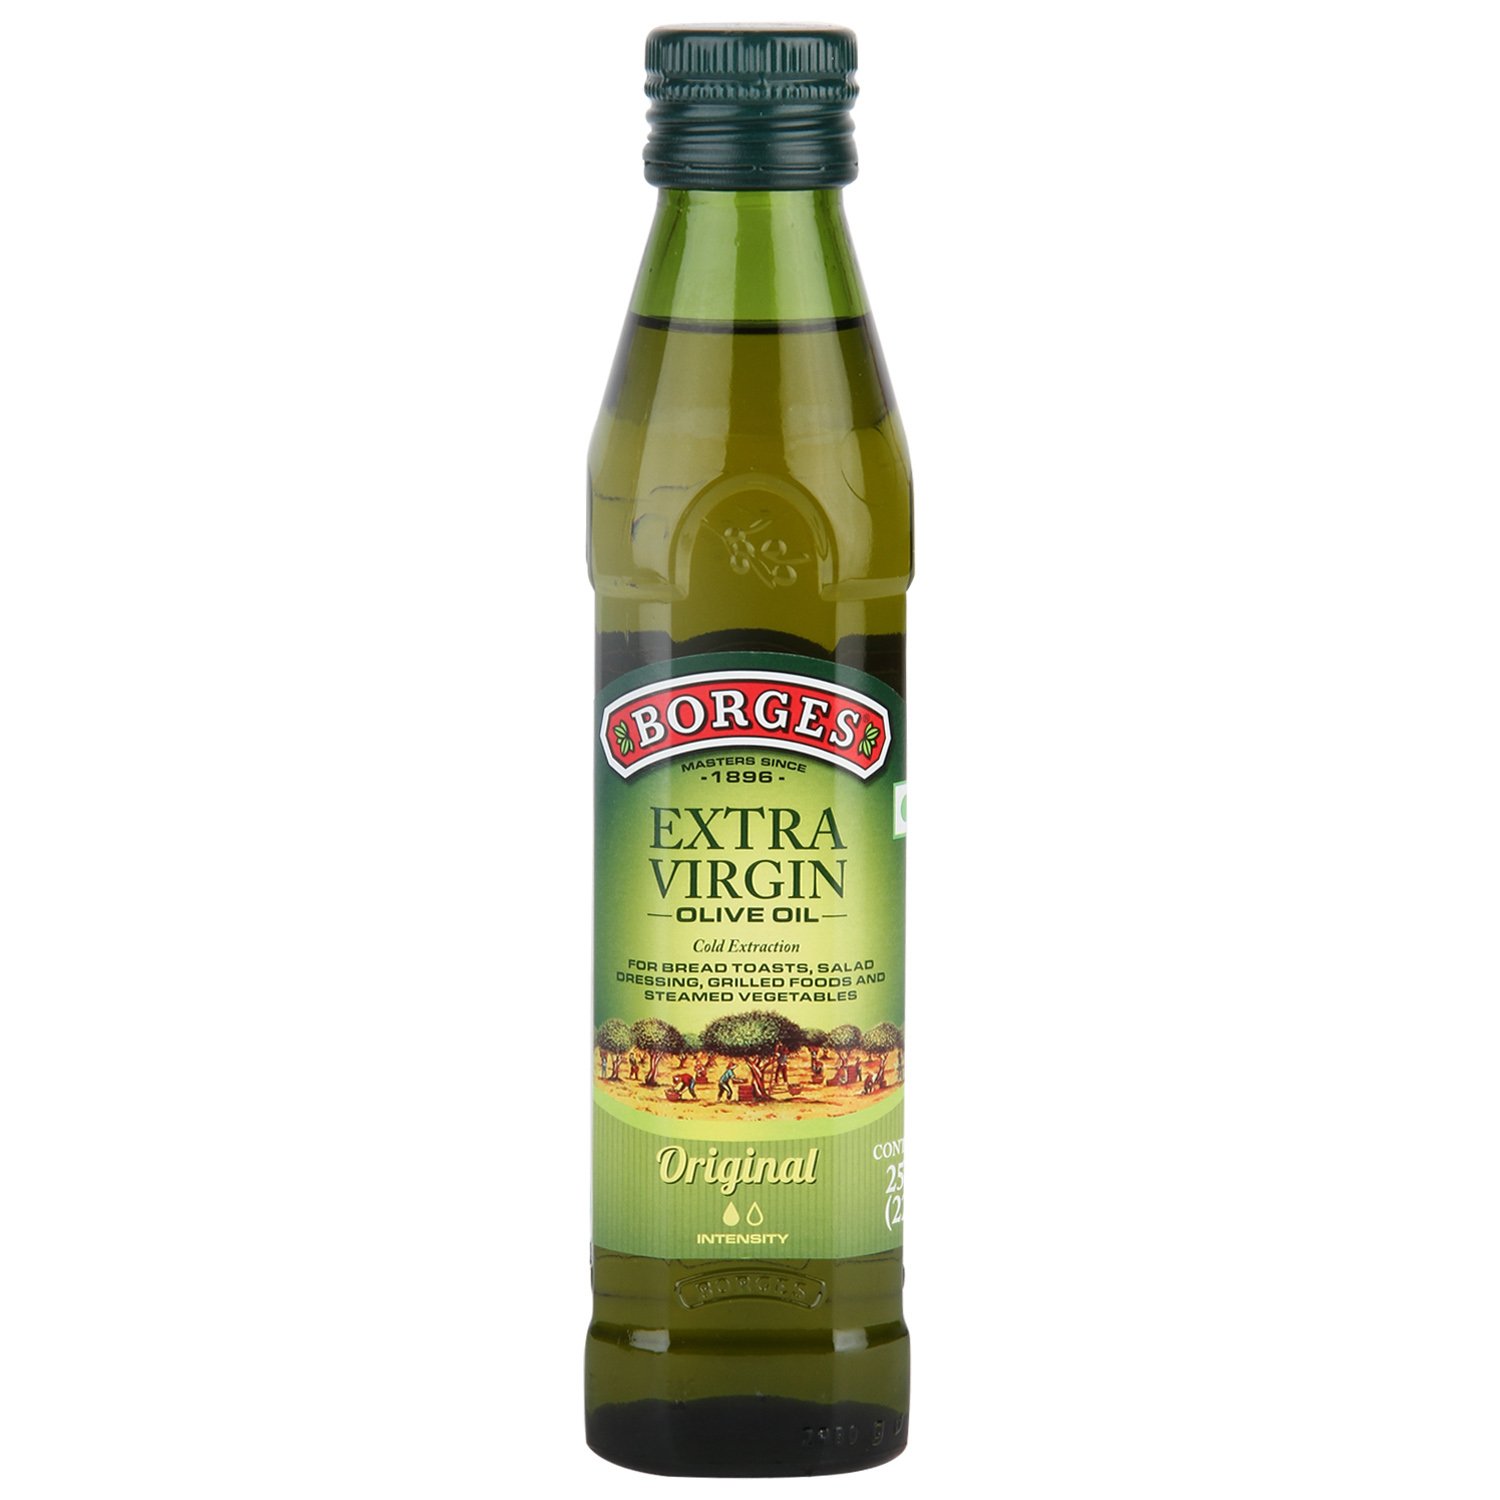 Как выбрать оливковое масло для салатов? Лучшие марки растительного масла